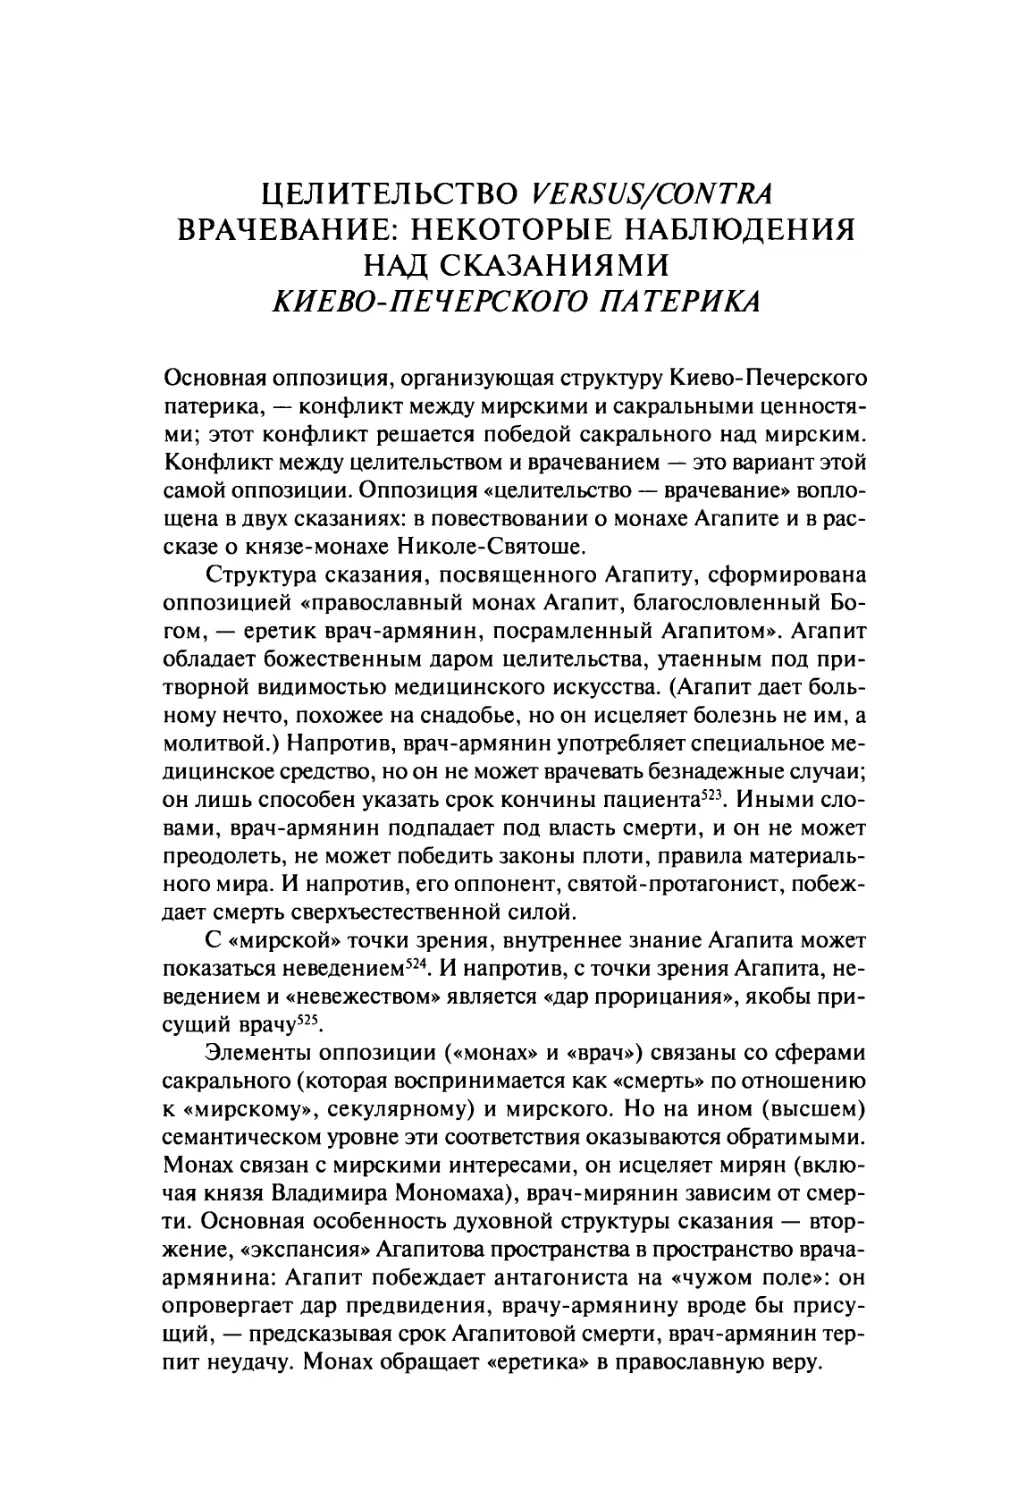 Целительство versus/contra врачевание: некоторые наблюдения над сказаниями Киево-Печерского патерика